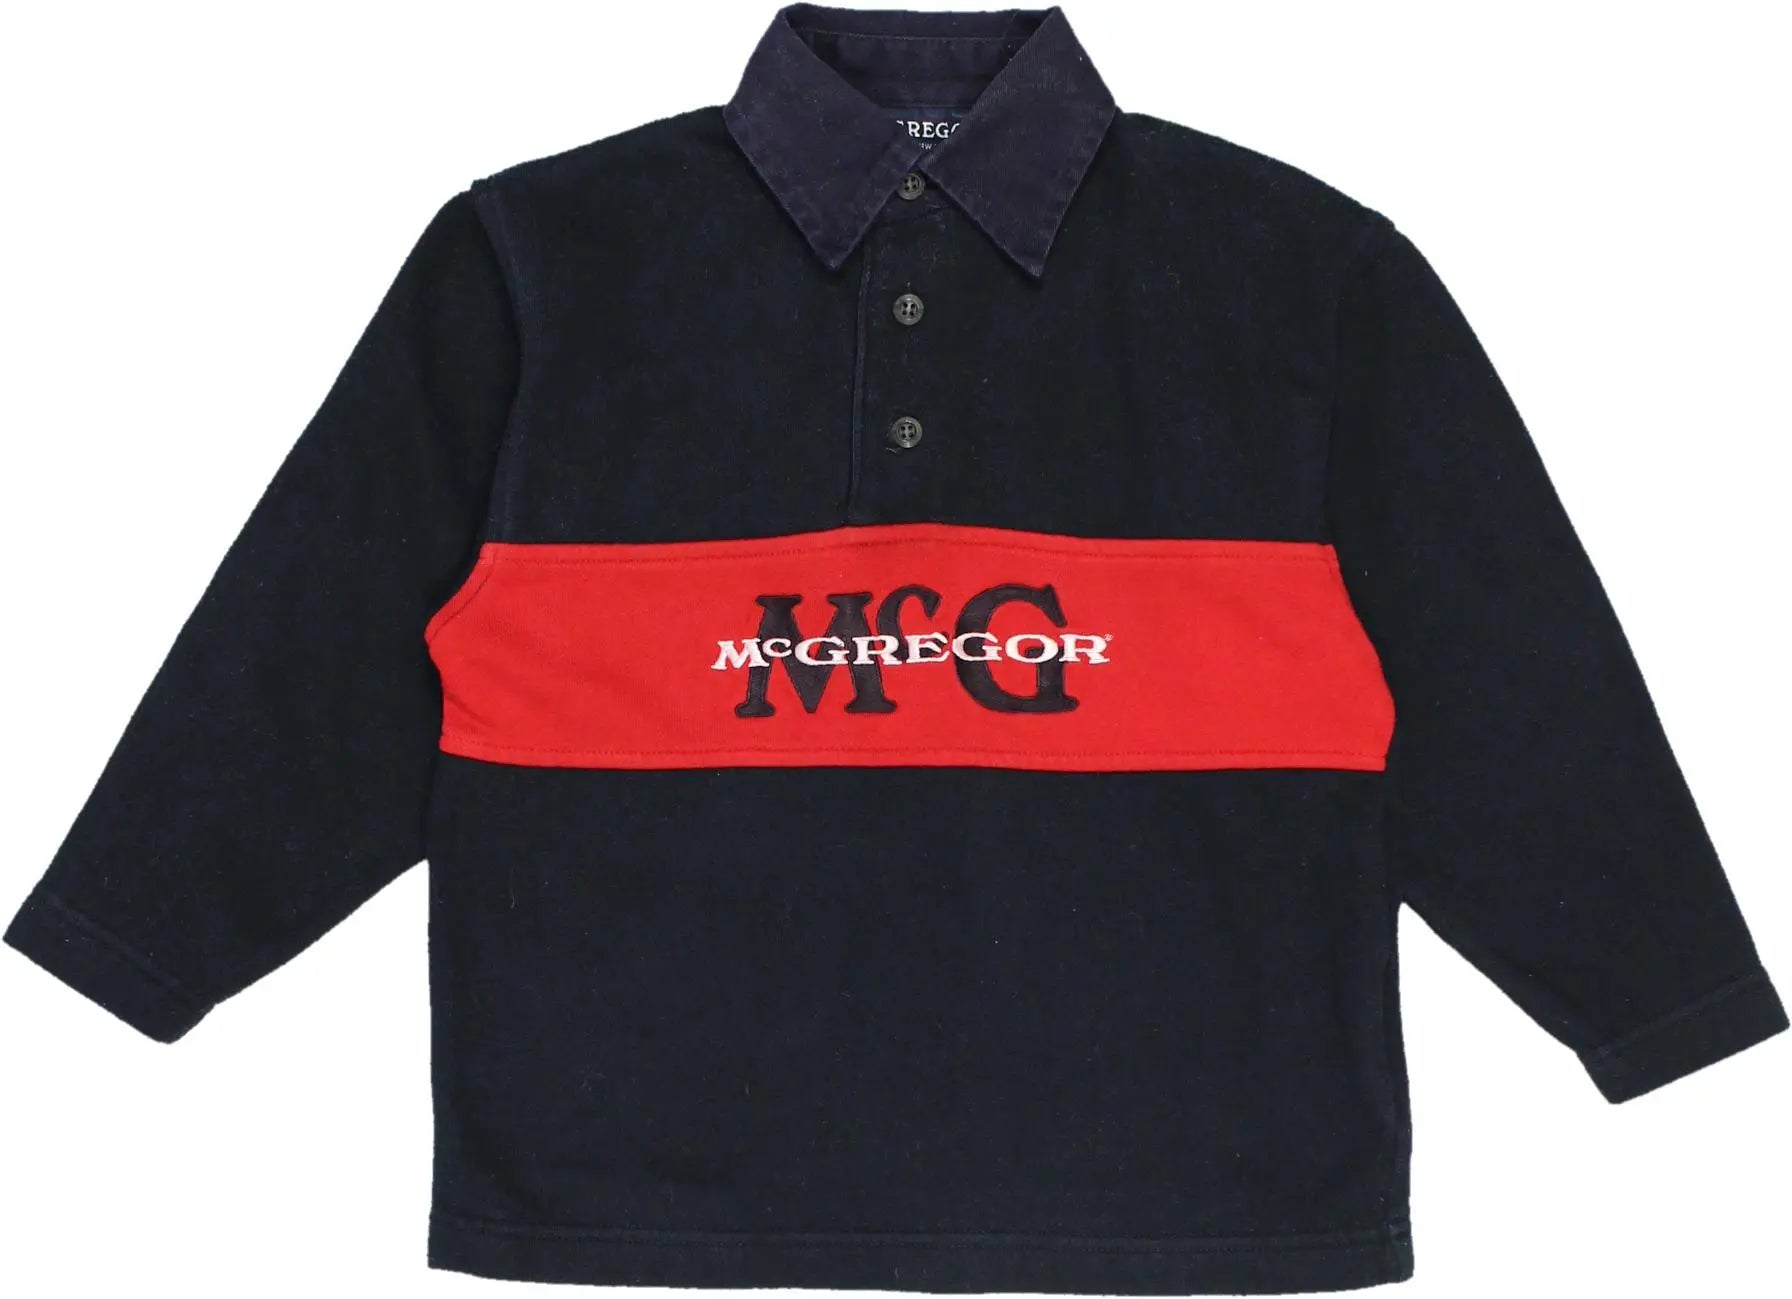 McGregor - Blue Quarter Neck Sweatshirt- ThriftTale.com - Vintage and second handclothing